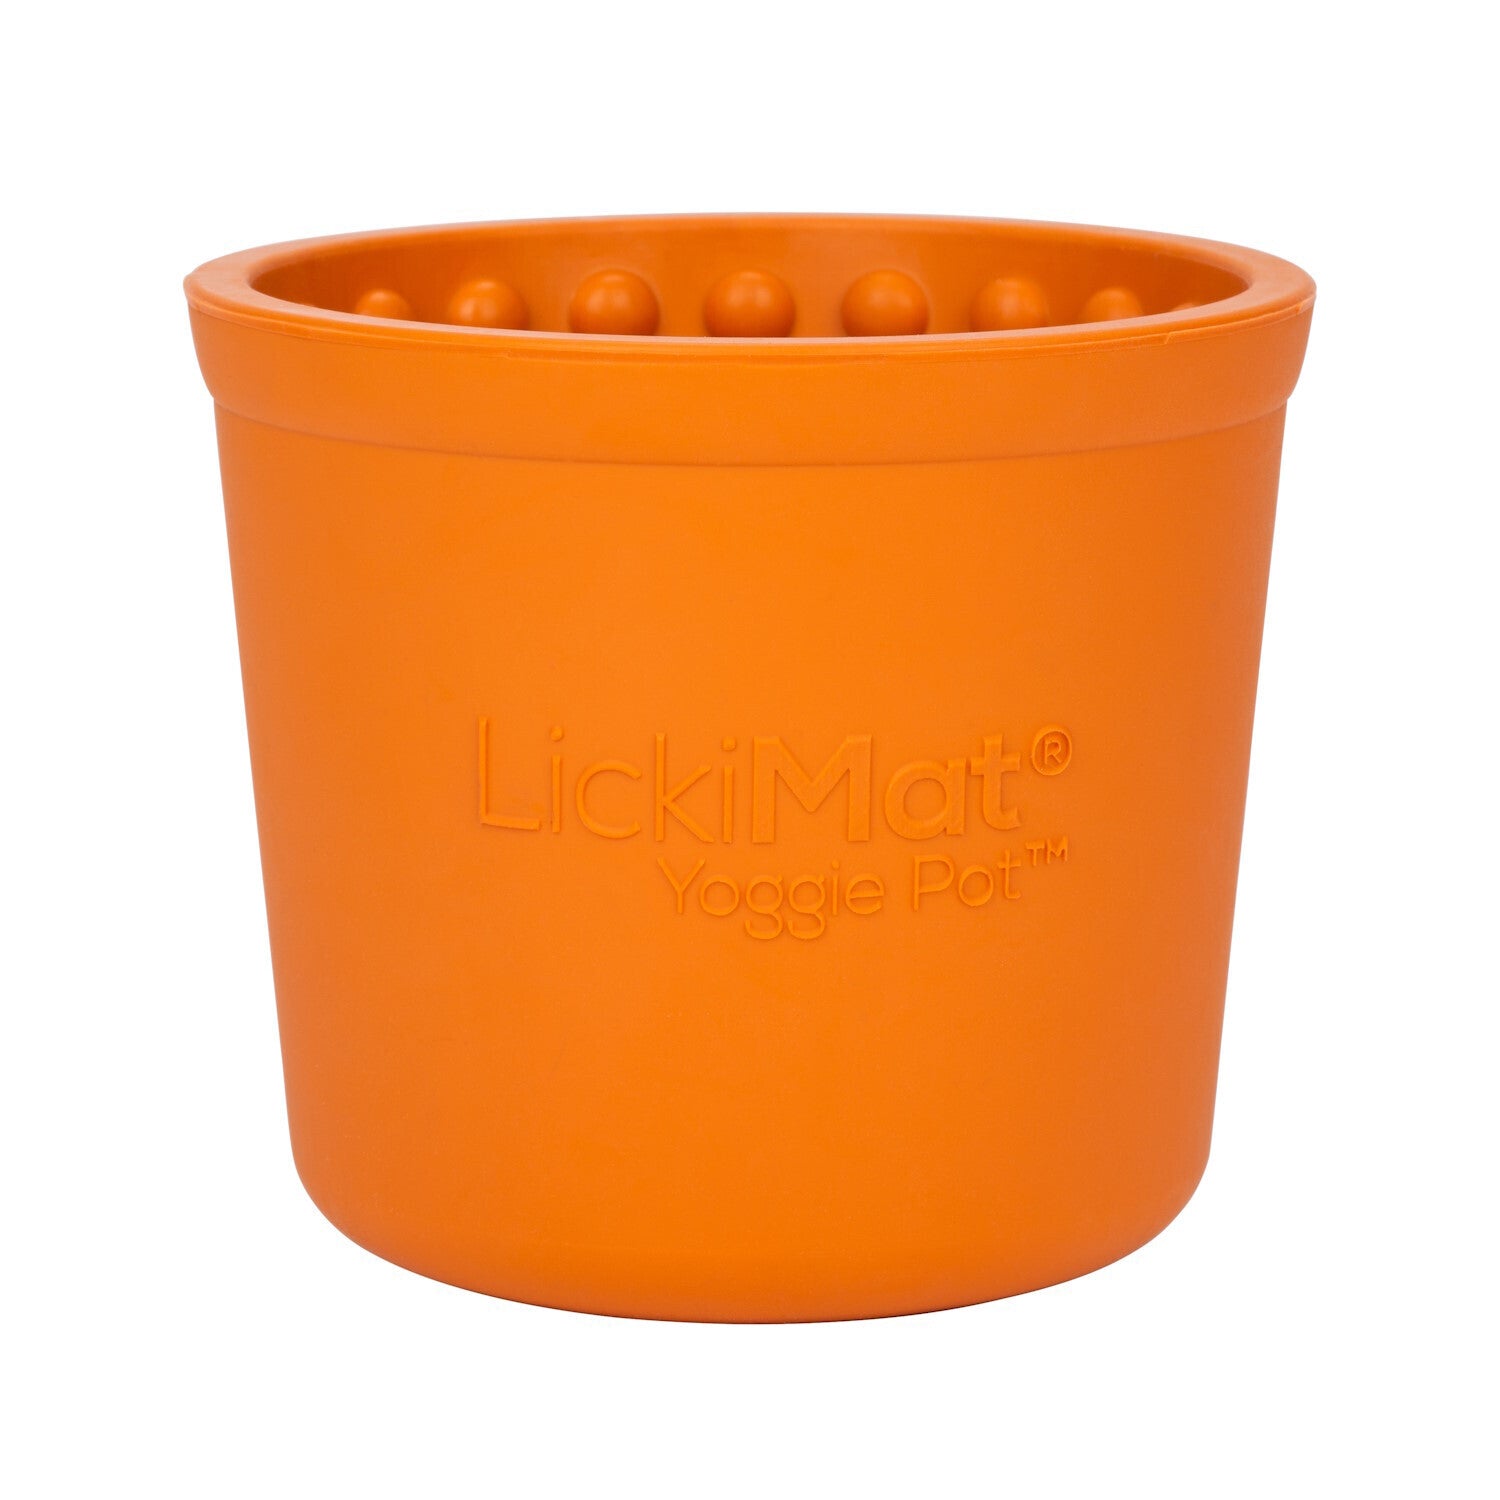 Orange slow feeding Your Whole Dog® LickiMat: Yoggie Pot™ dog treat bowl.